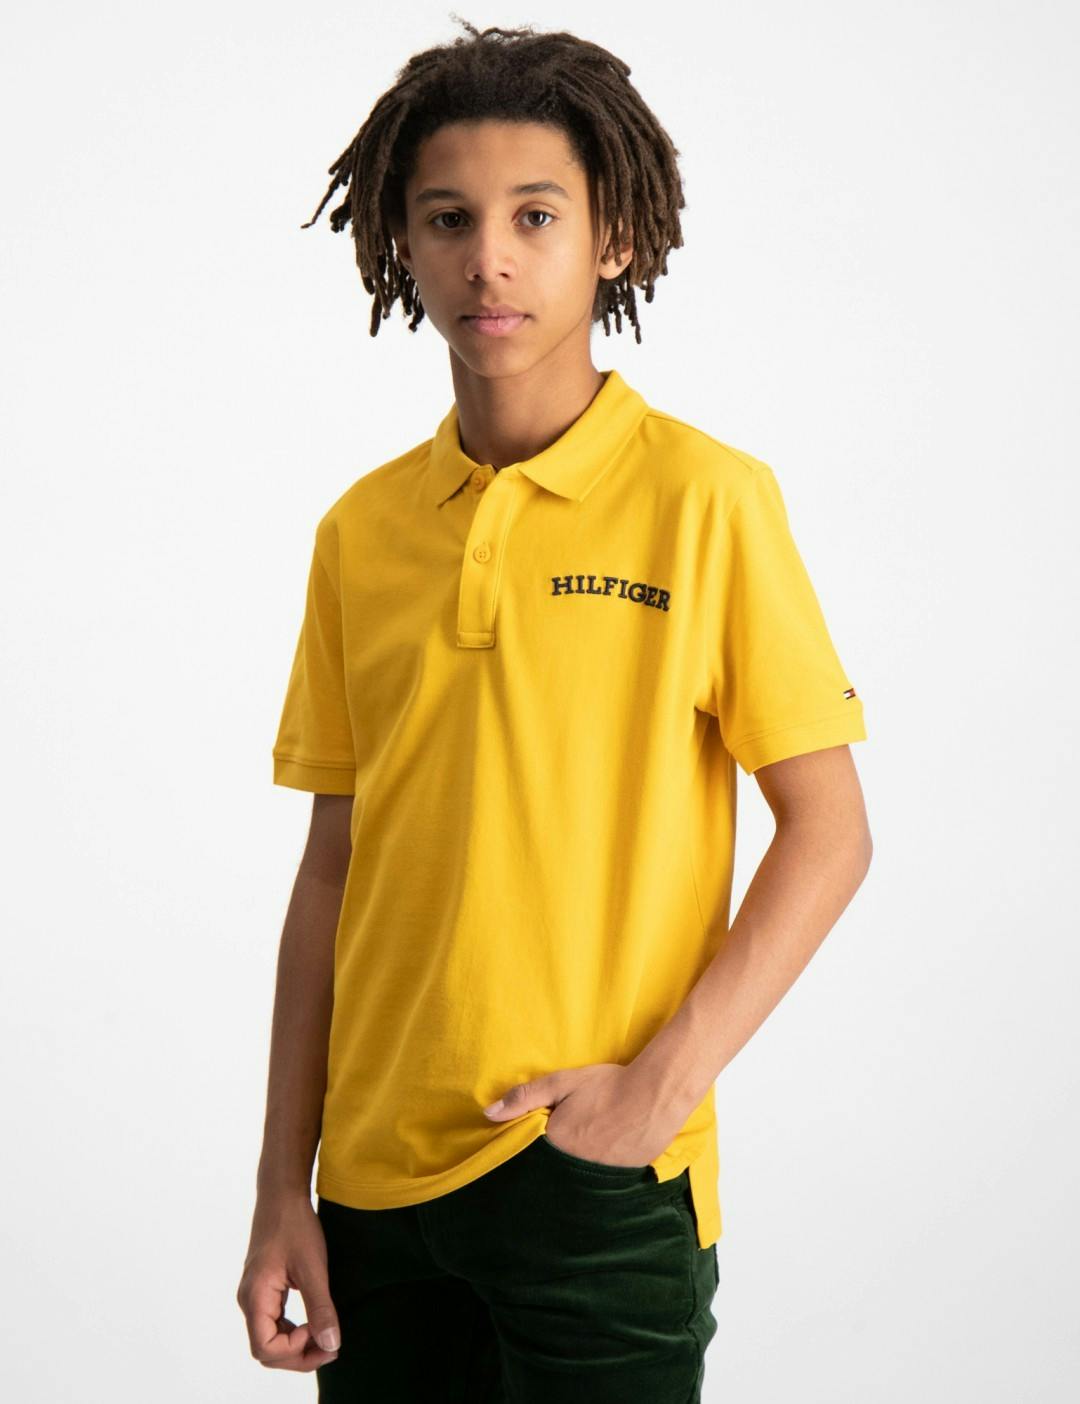 Tommy Hilfiger Polo T-Shirt & Pique Hemden für Kinder und Jugendliche | Kids  Brand Store